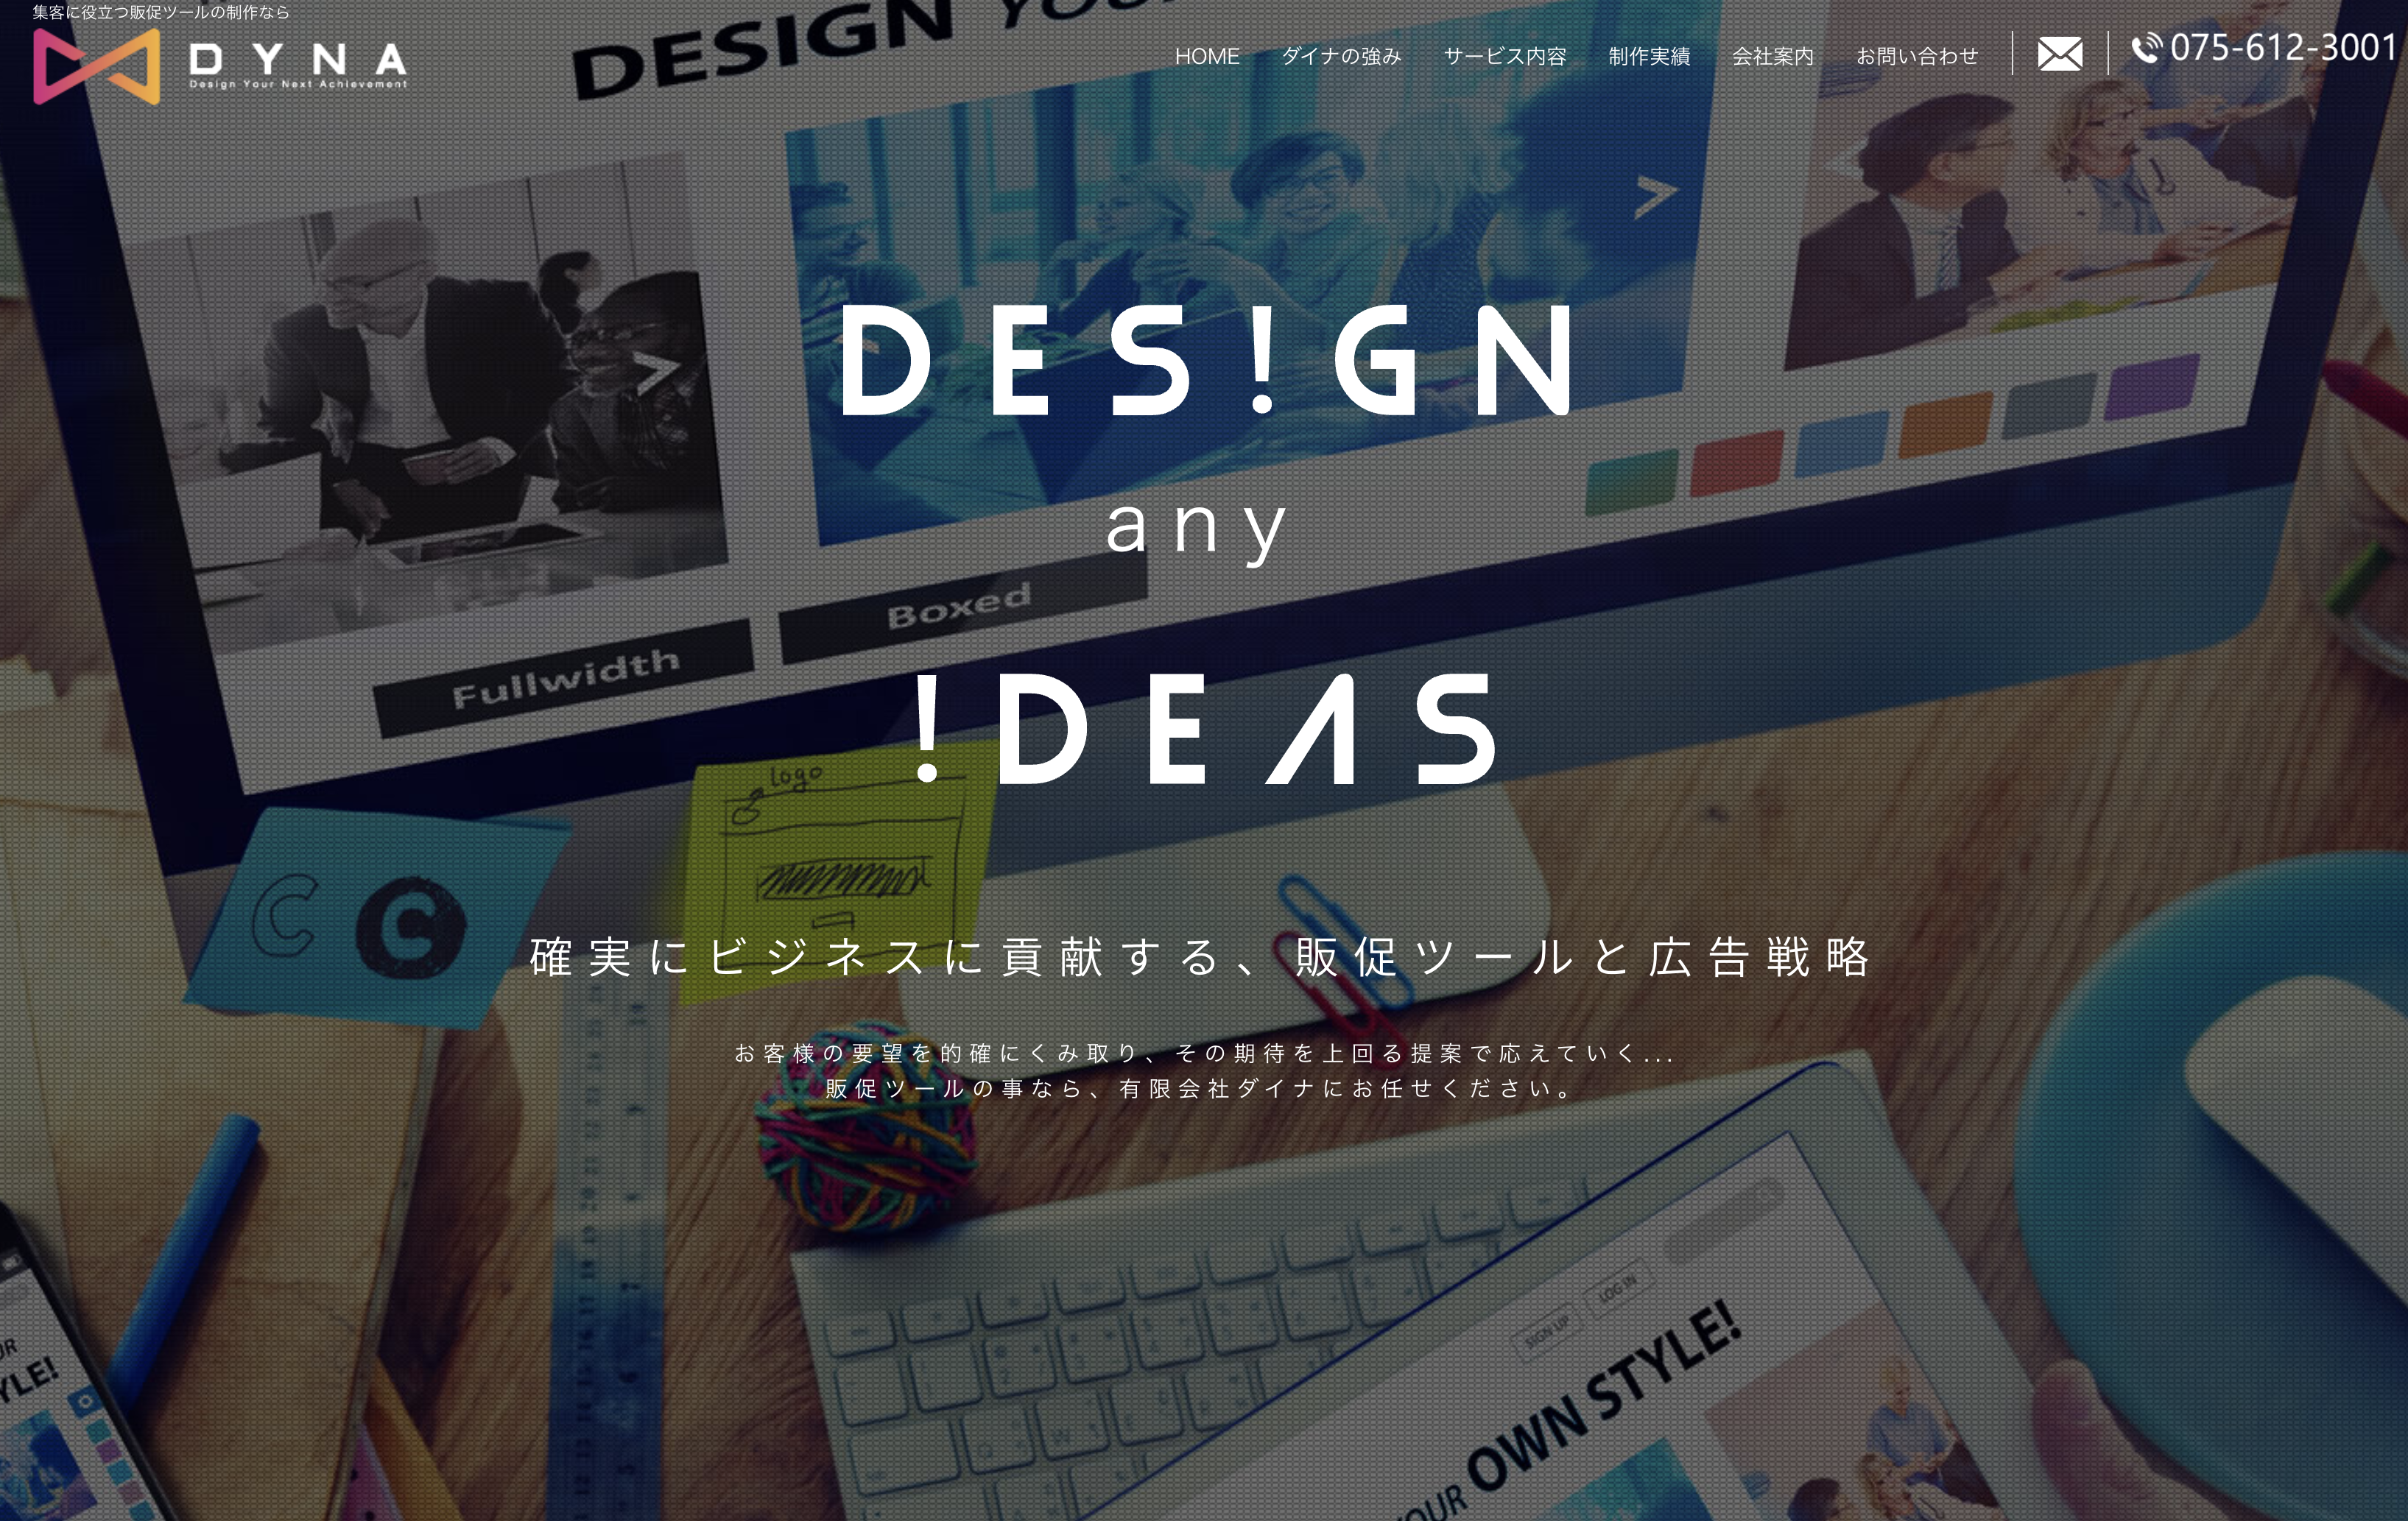 有限会社ダイナの有限会社ダイナ:デザイン制作サービス